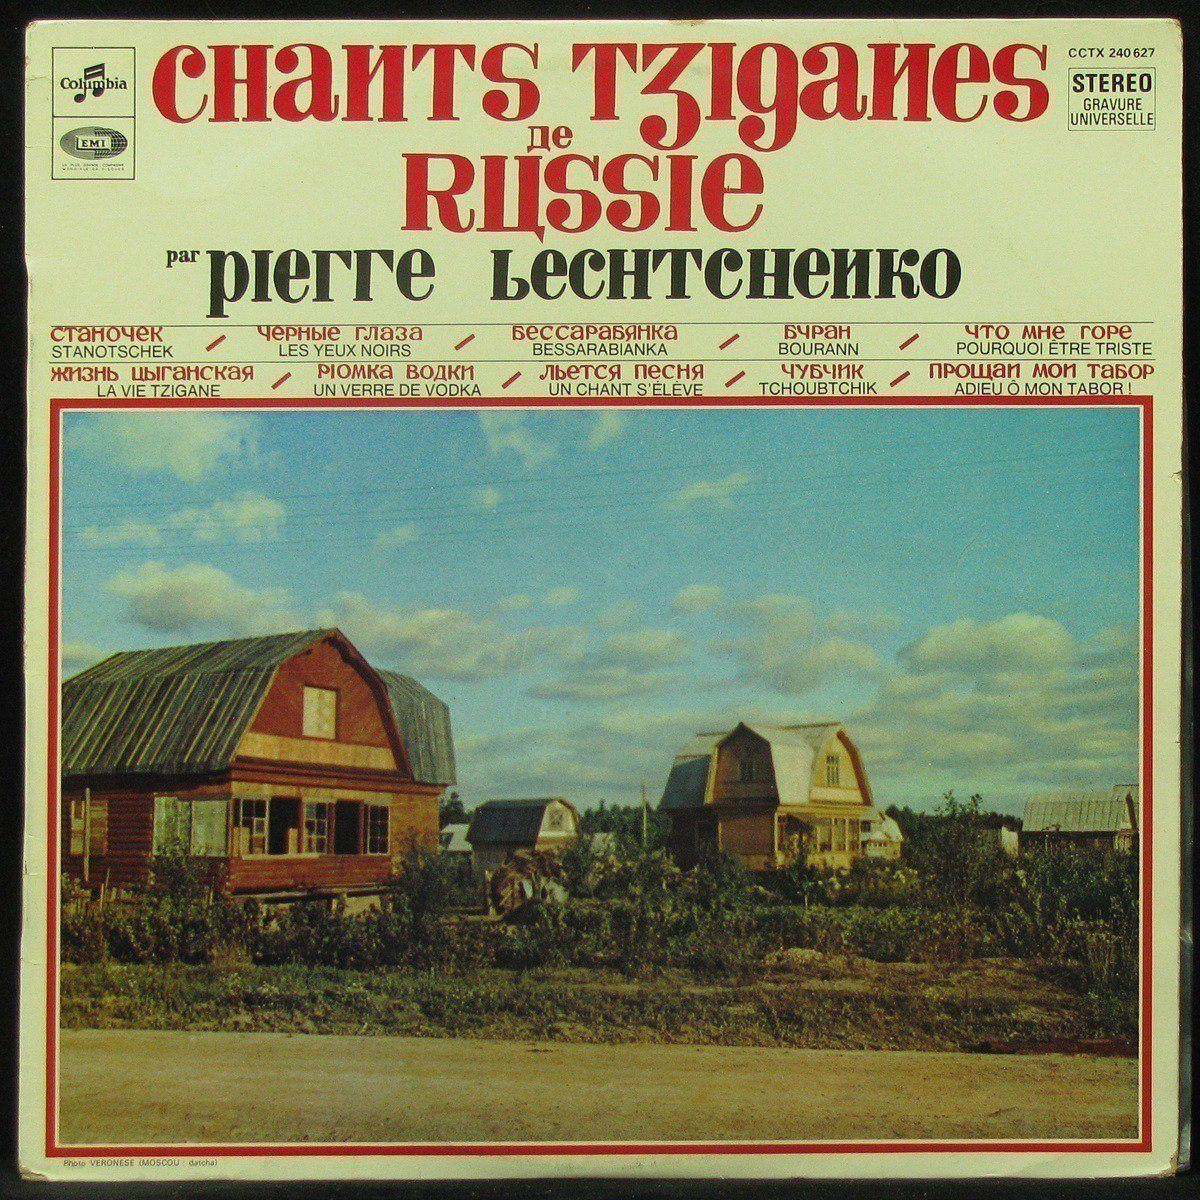 LP Pierre Lechtchenko — Chants Tziganes De Russie фото